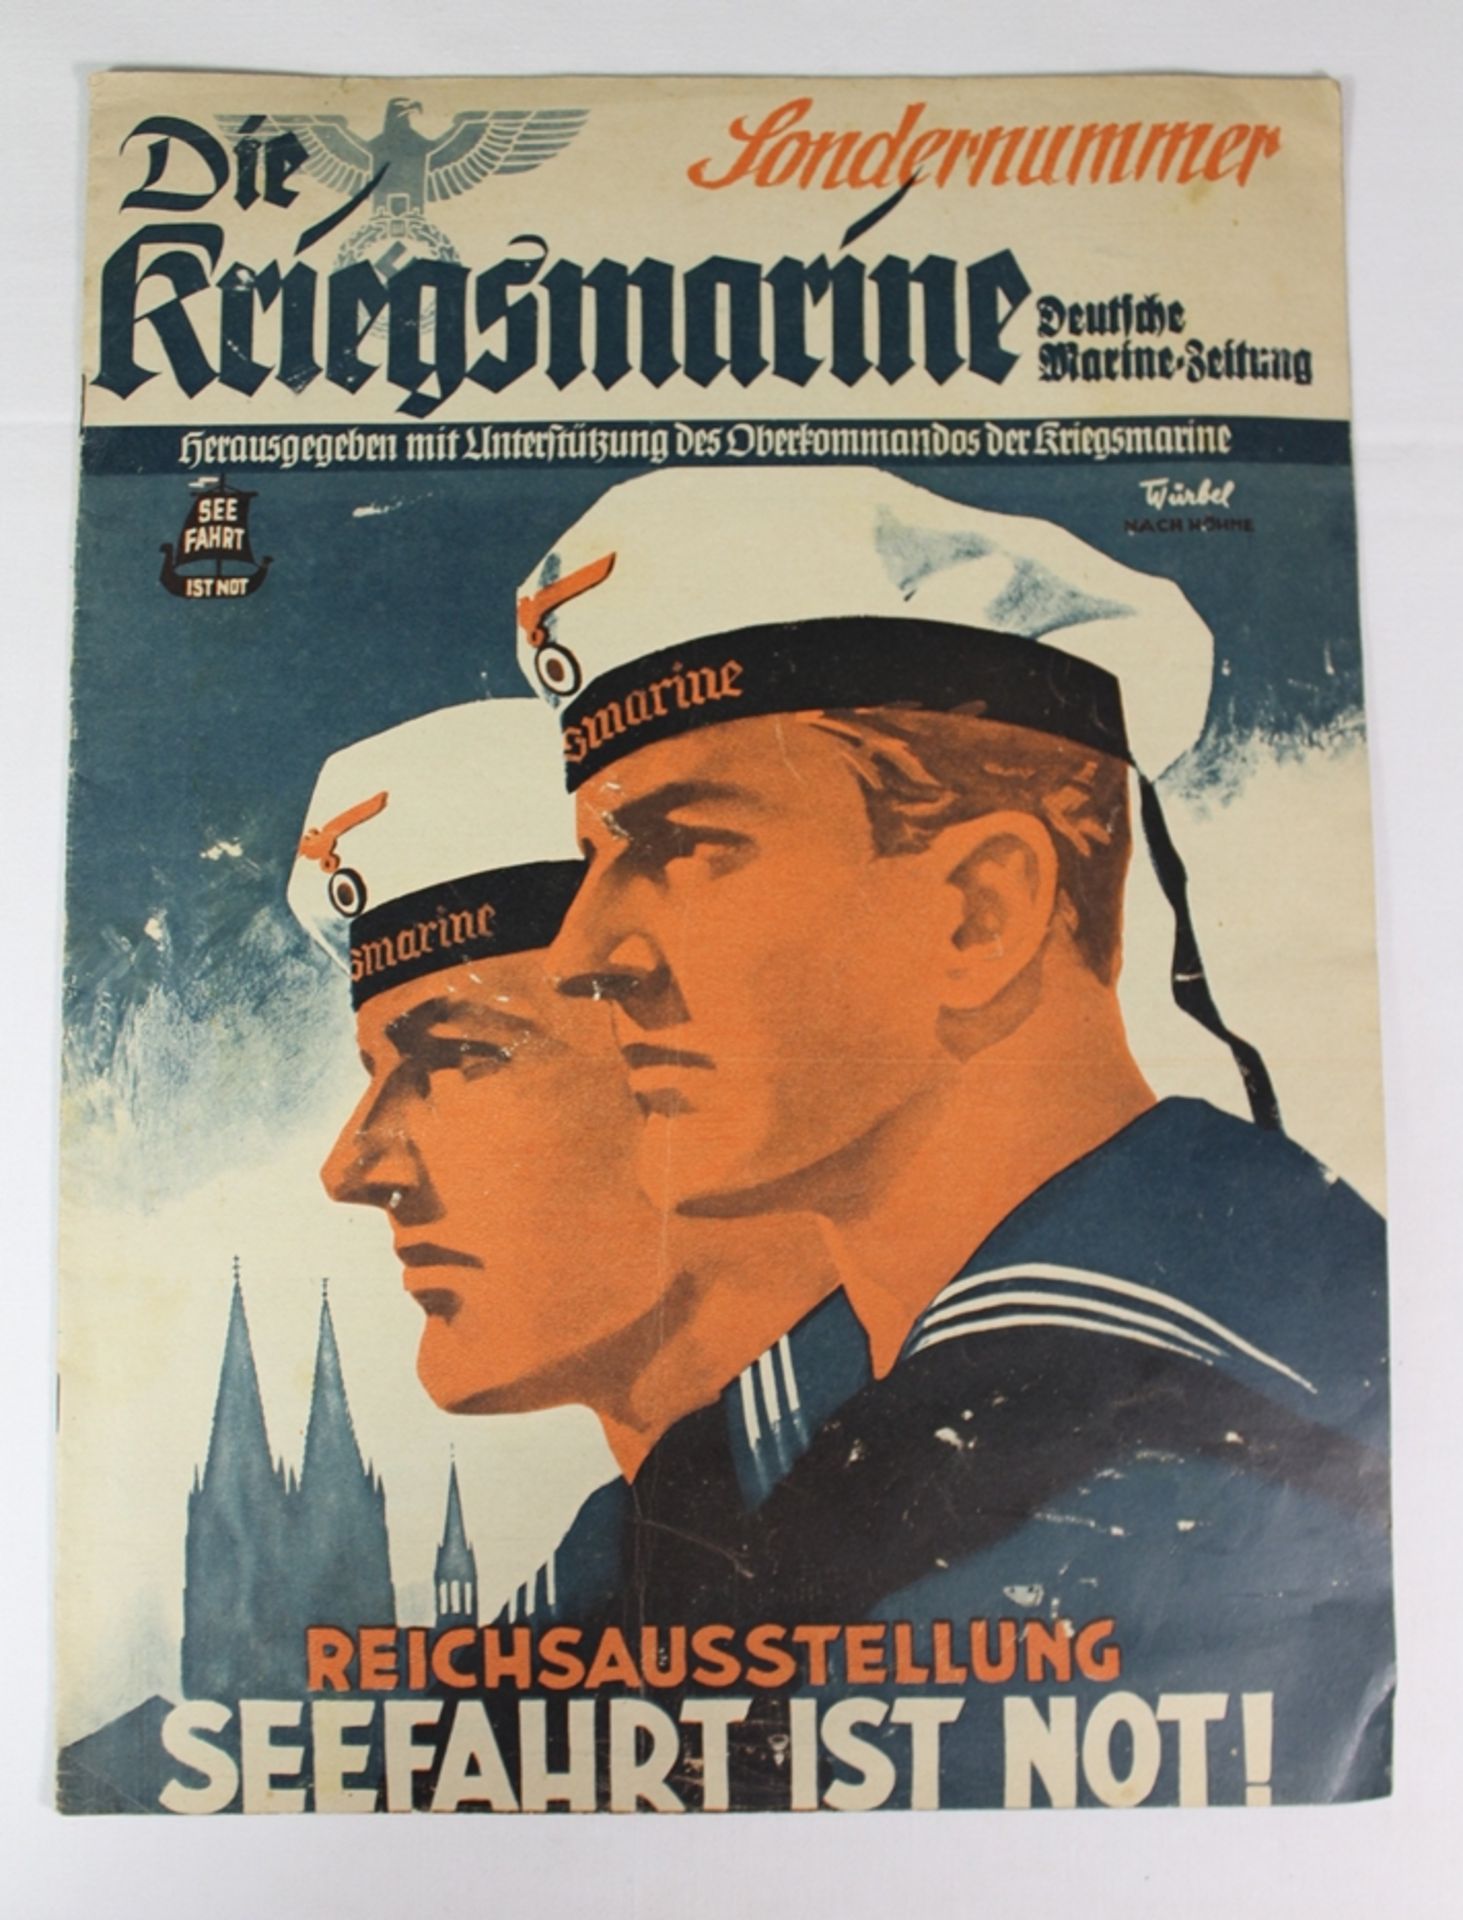 Sonderausgabe "Die Kriegsmarine - Reichsaustellung Seefahrt ist Not!"